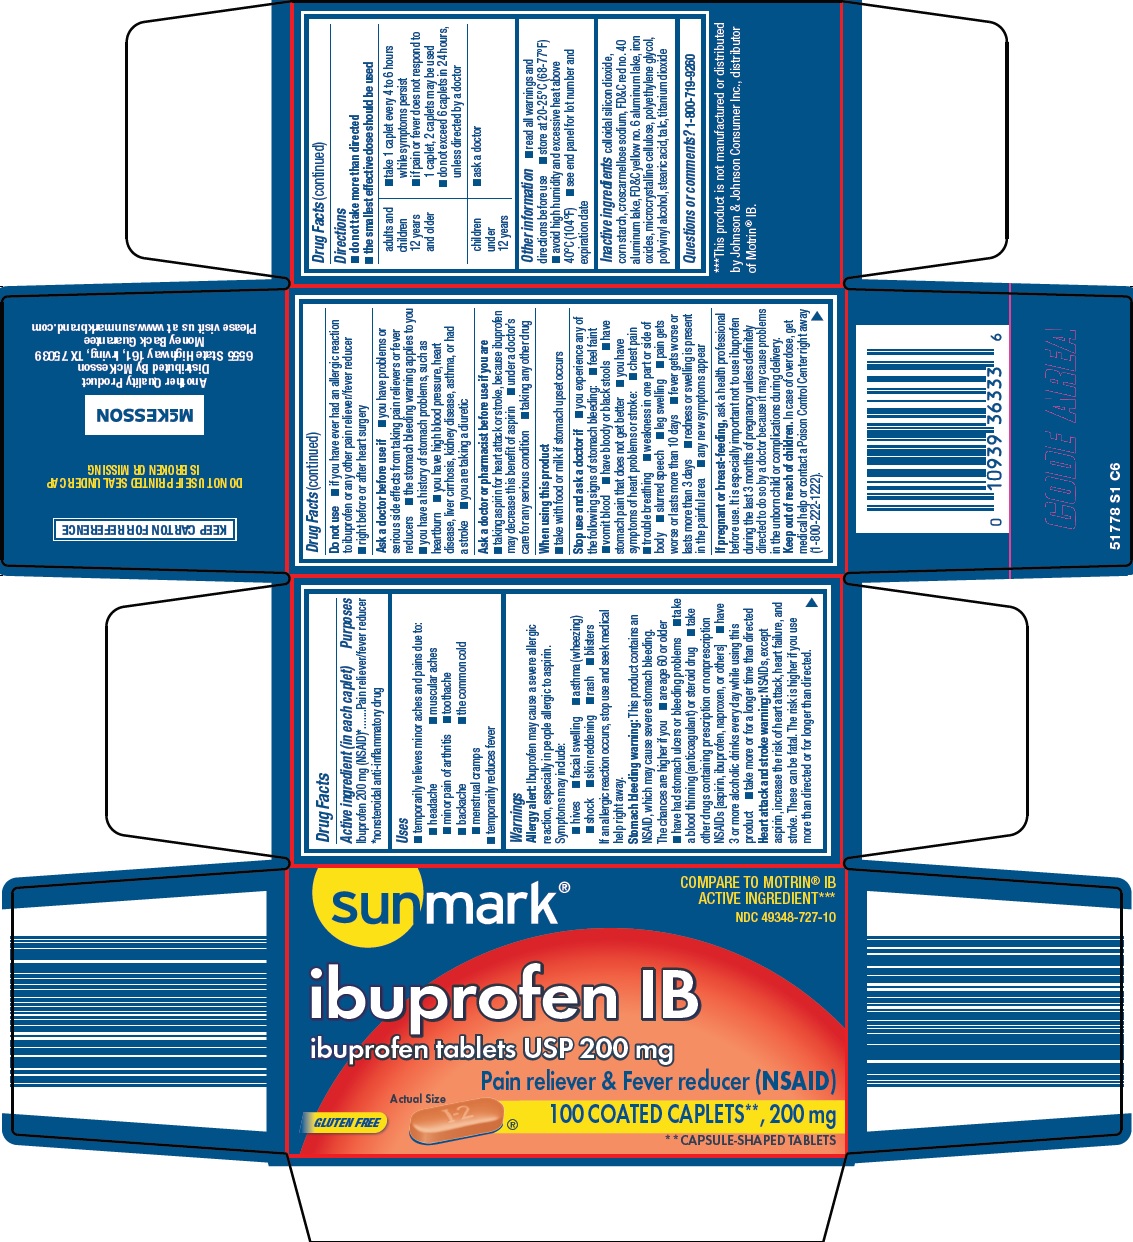 517-s1-ibuprofen-ib.jpg